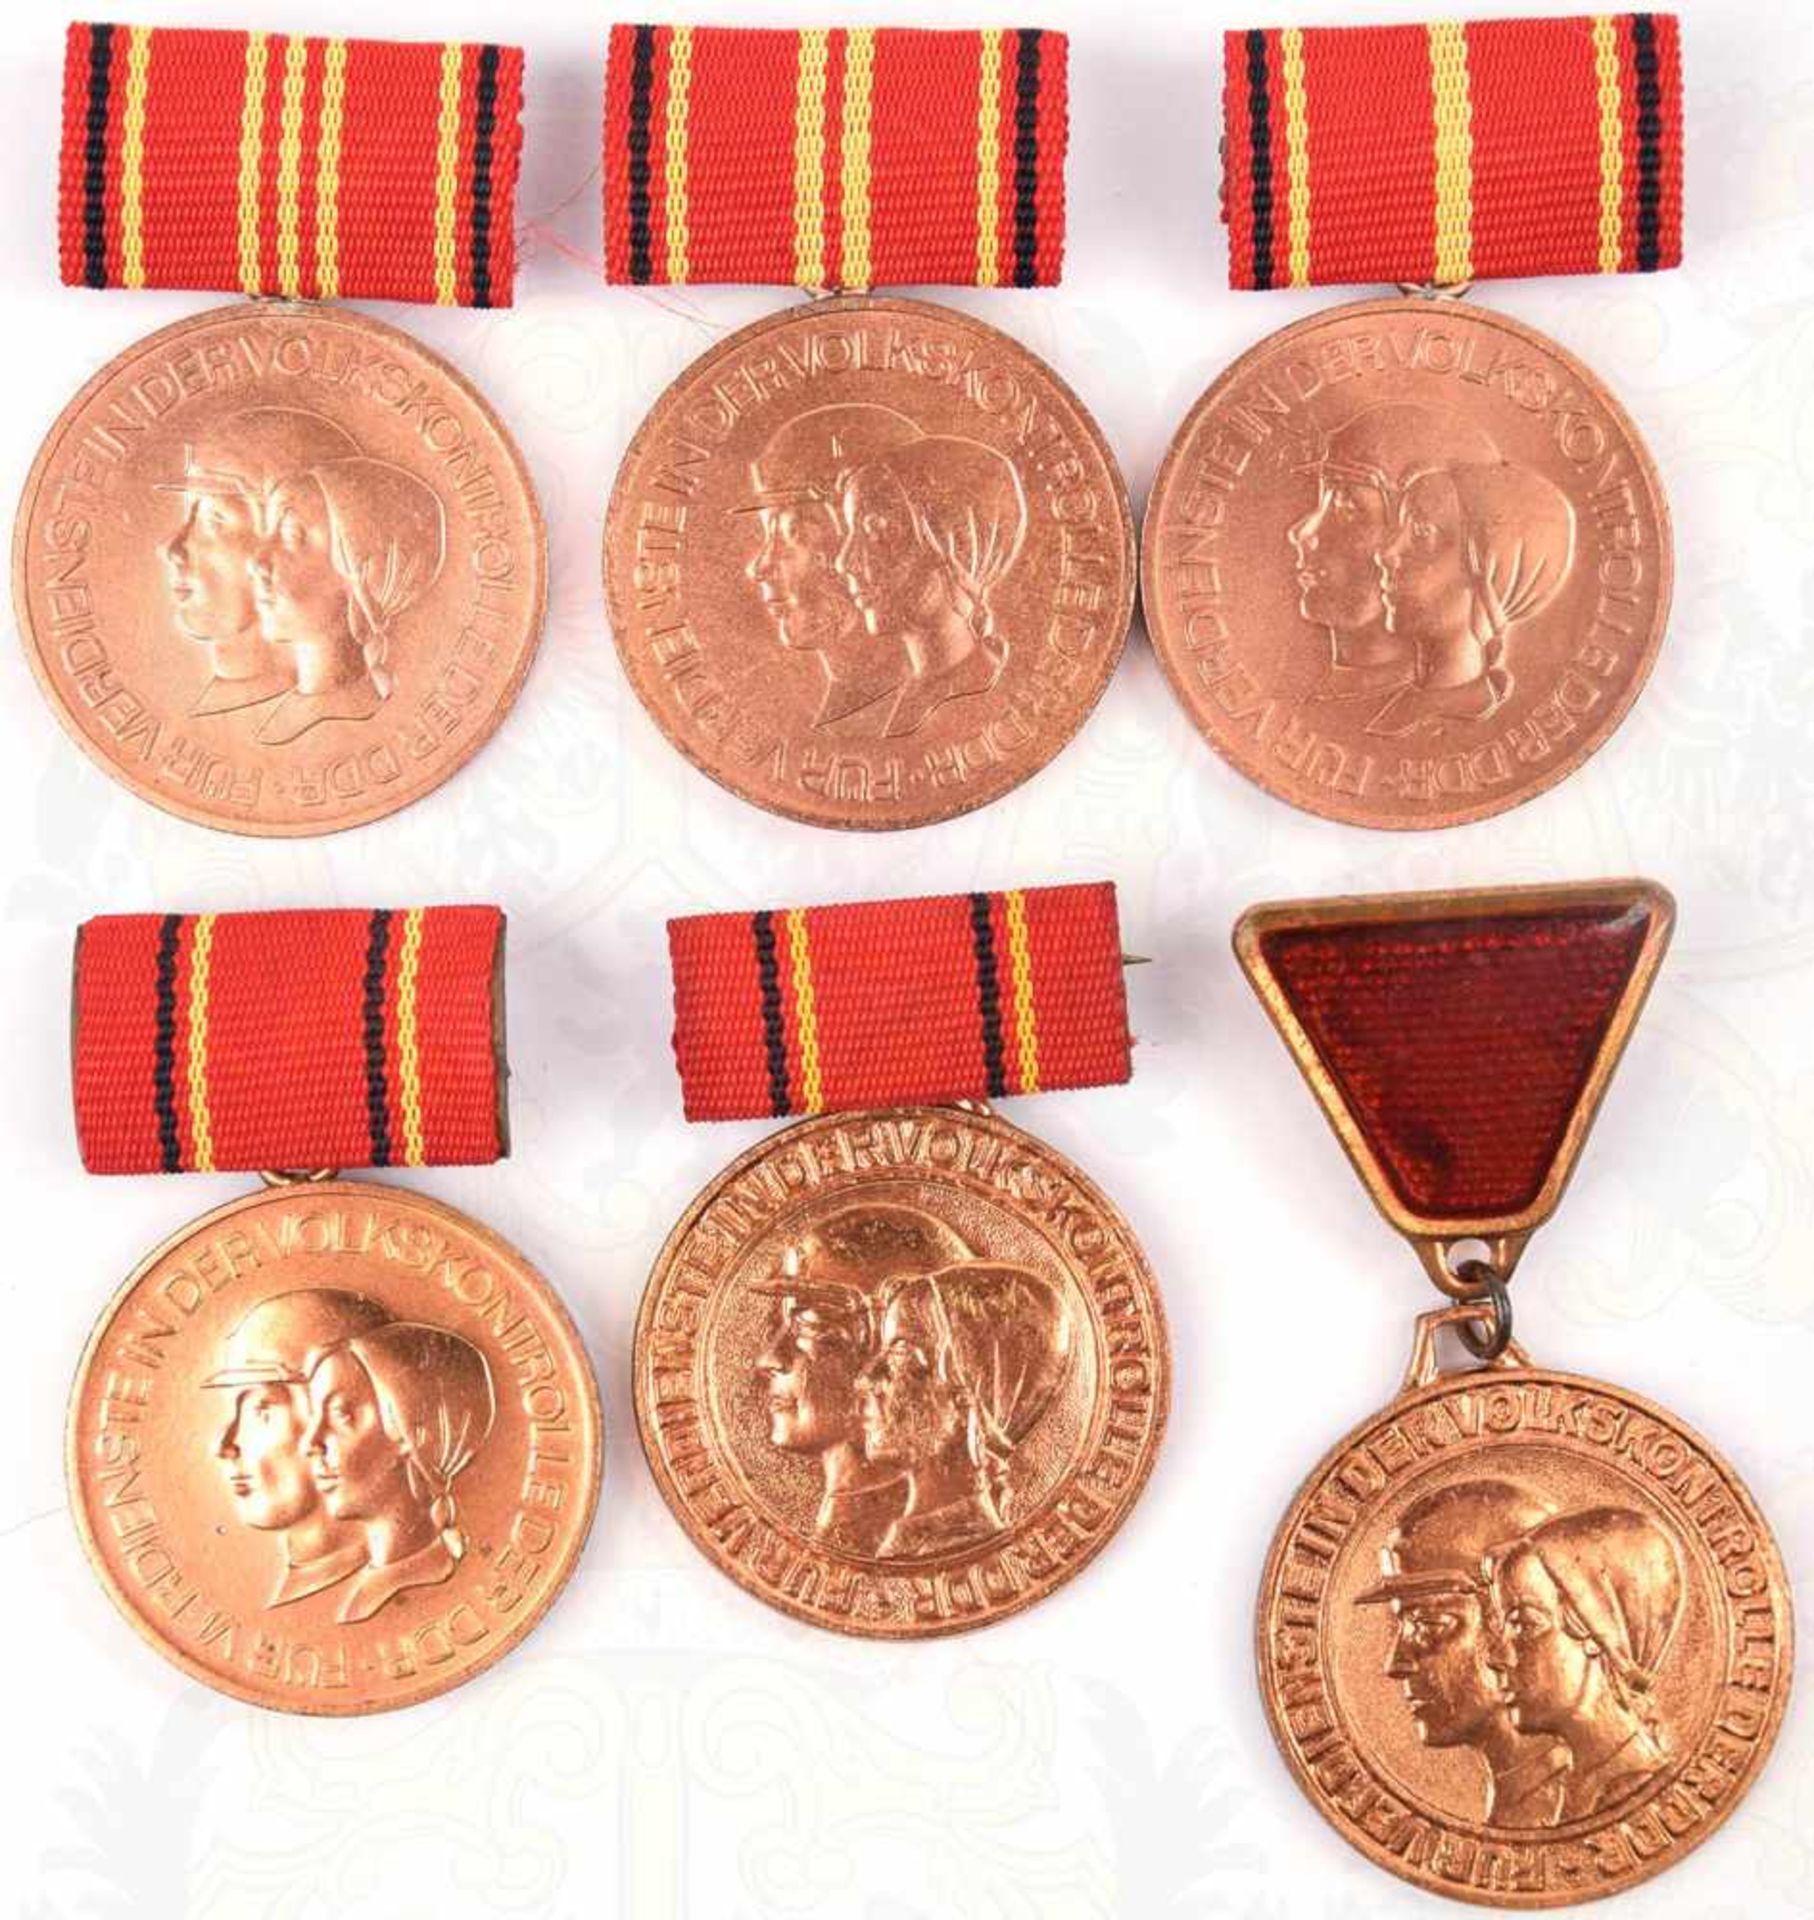 6 MEDAILLEN VOLKSKONTROLLE, 3 Ehrennadeln, 3 Medaillen für Treue Dienste, Stufen I/II/III,